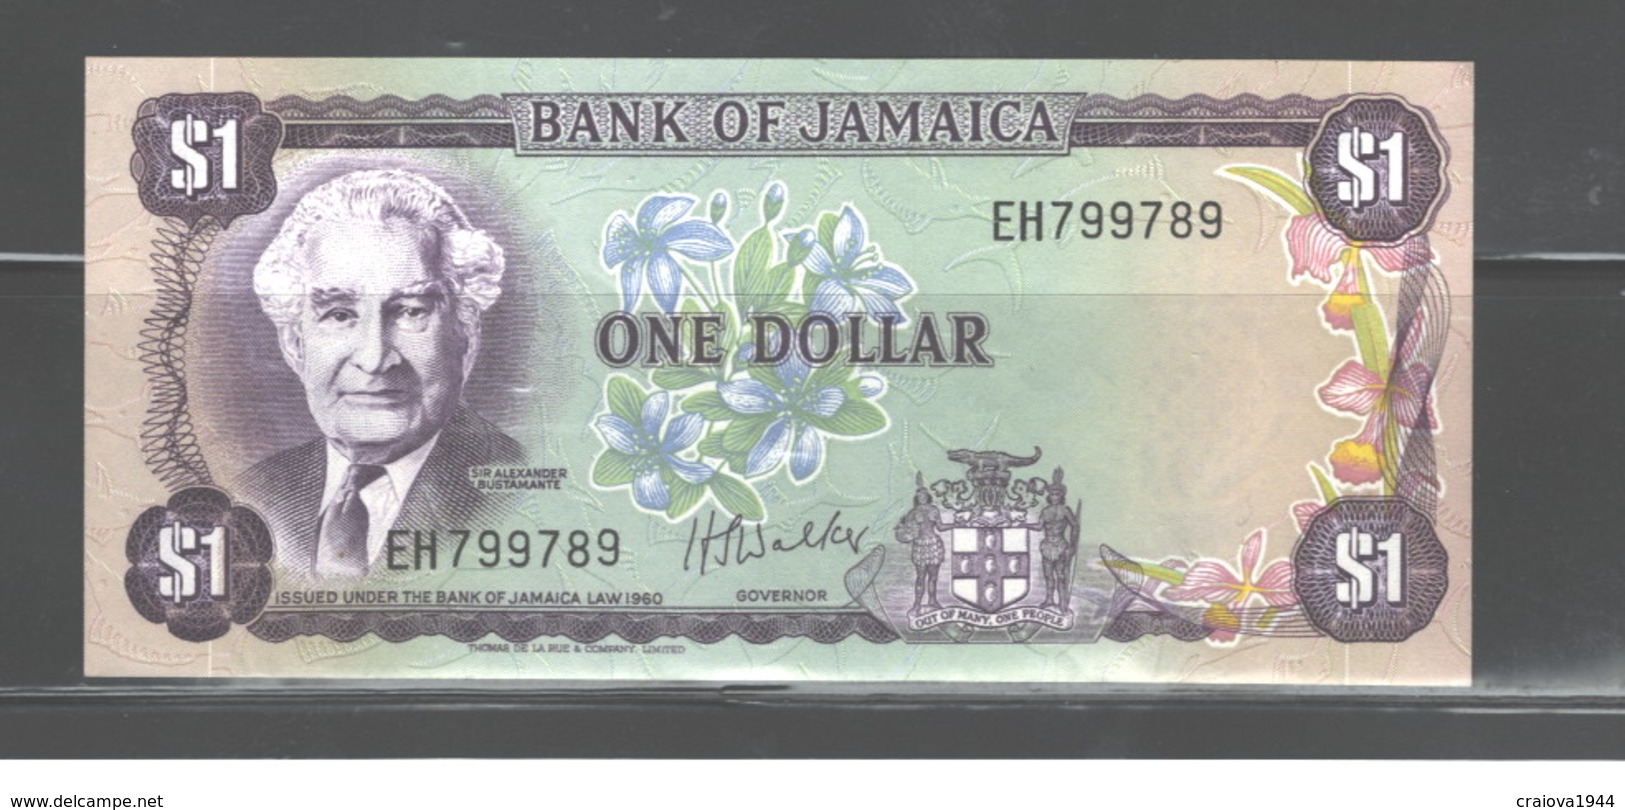 JAMAICA $1 1960, (IN MY OPINION), UNC - Jamaique